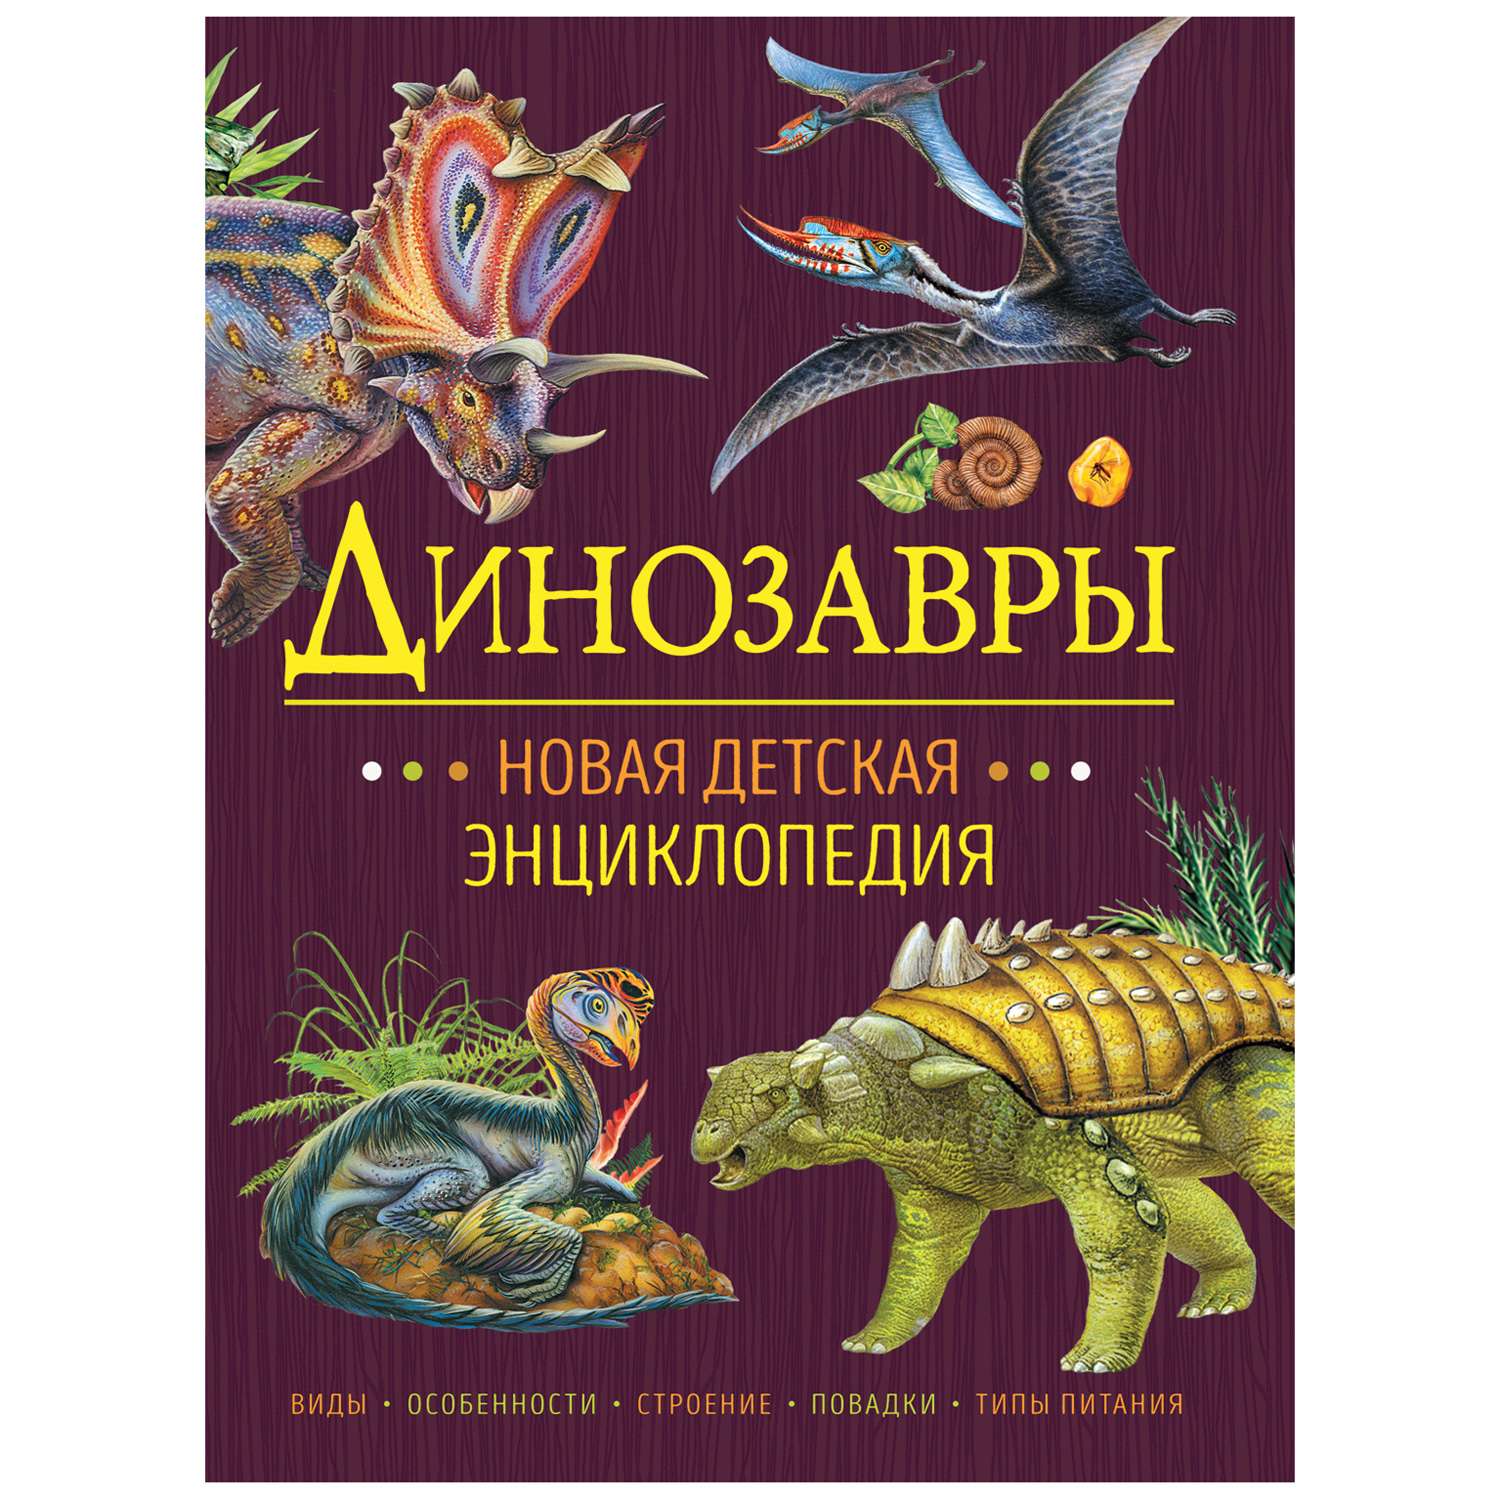 Книга Росмэн Динозавры Новая детская энциклопедия - фото 1